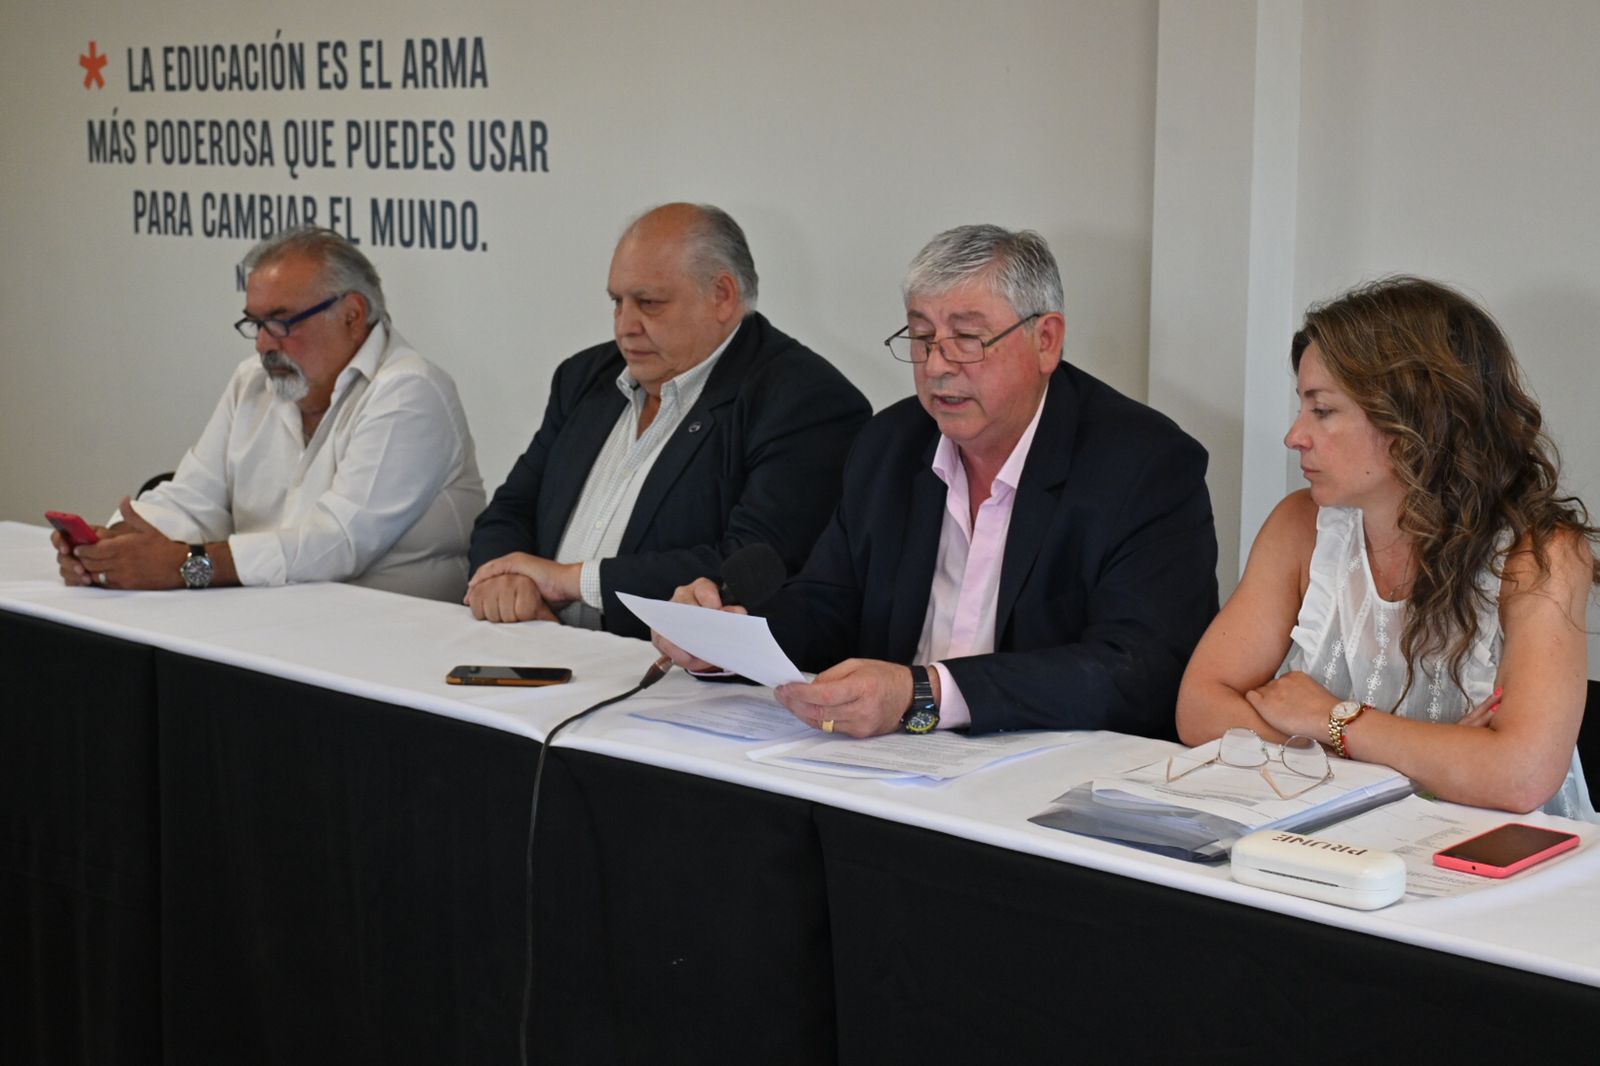 El mandatario presentó el diagnóstico junto al jefe de Gabinete, Leguizamón Pondal, y la secretaria de Hacienda, Carina Ondarçuhu. (Foto: Alfredo Leiva)